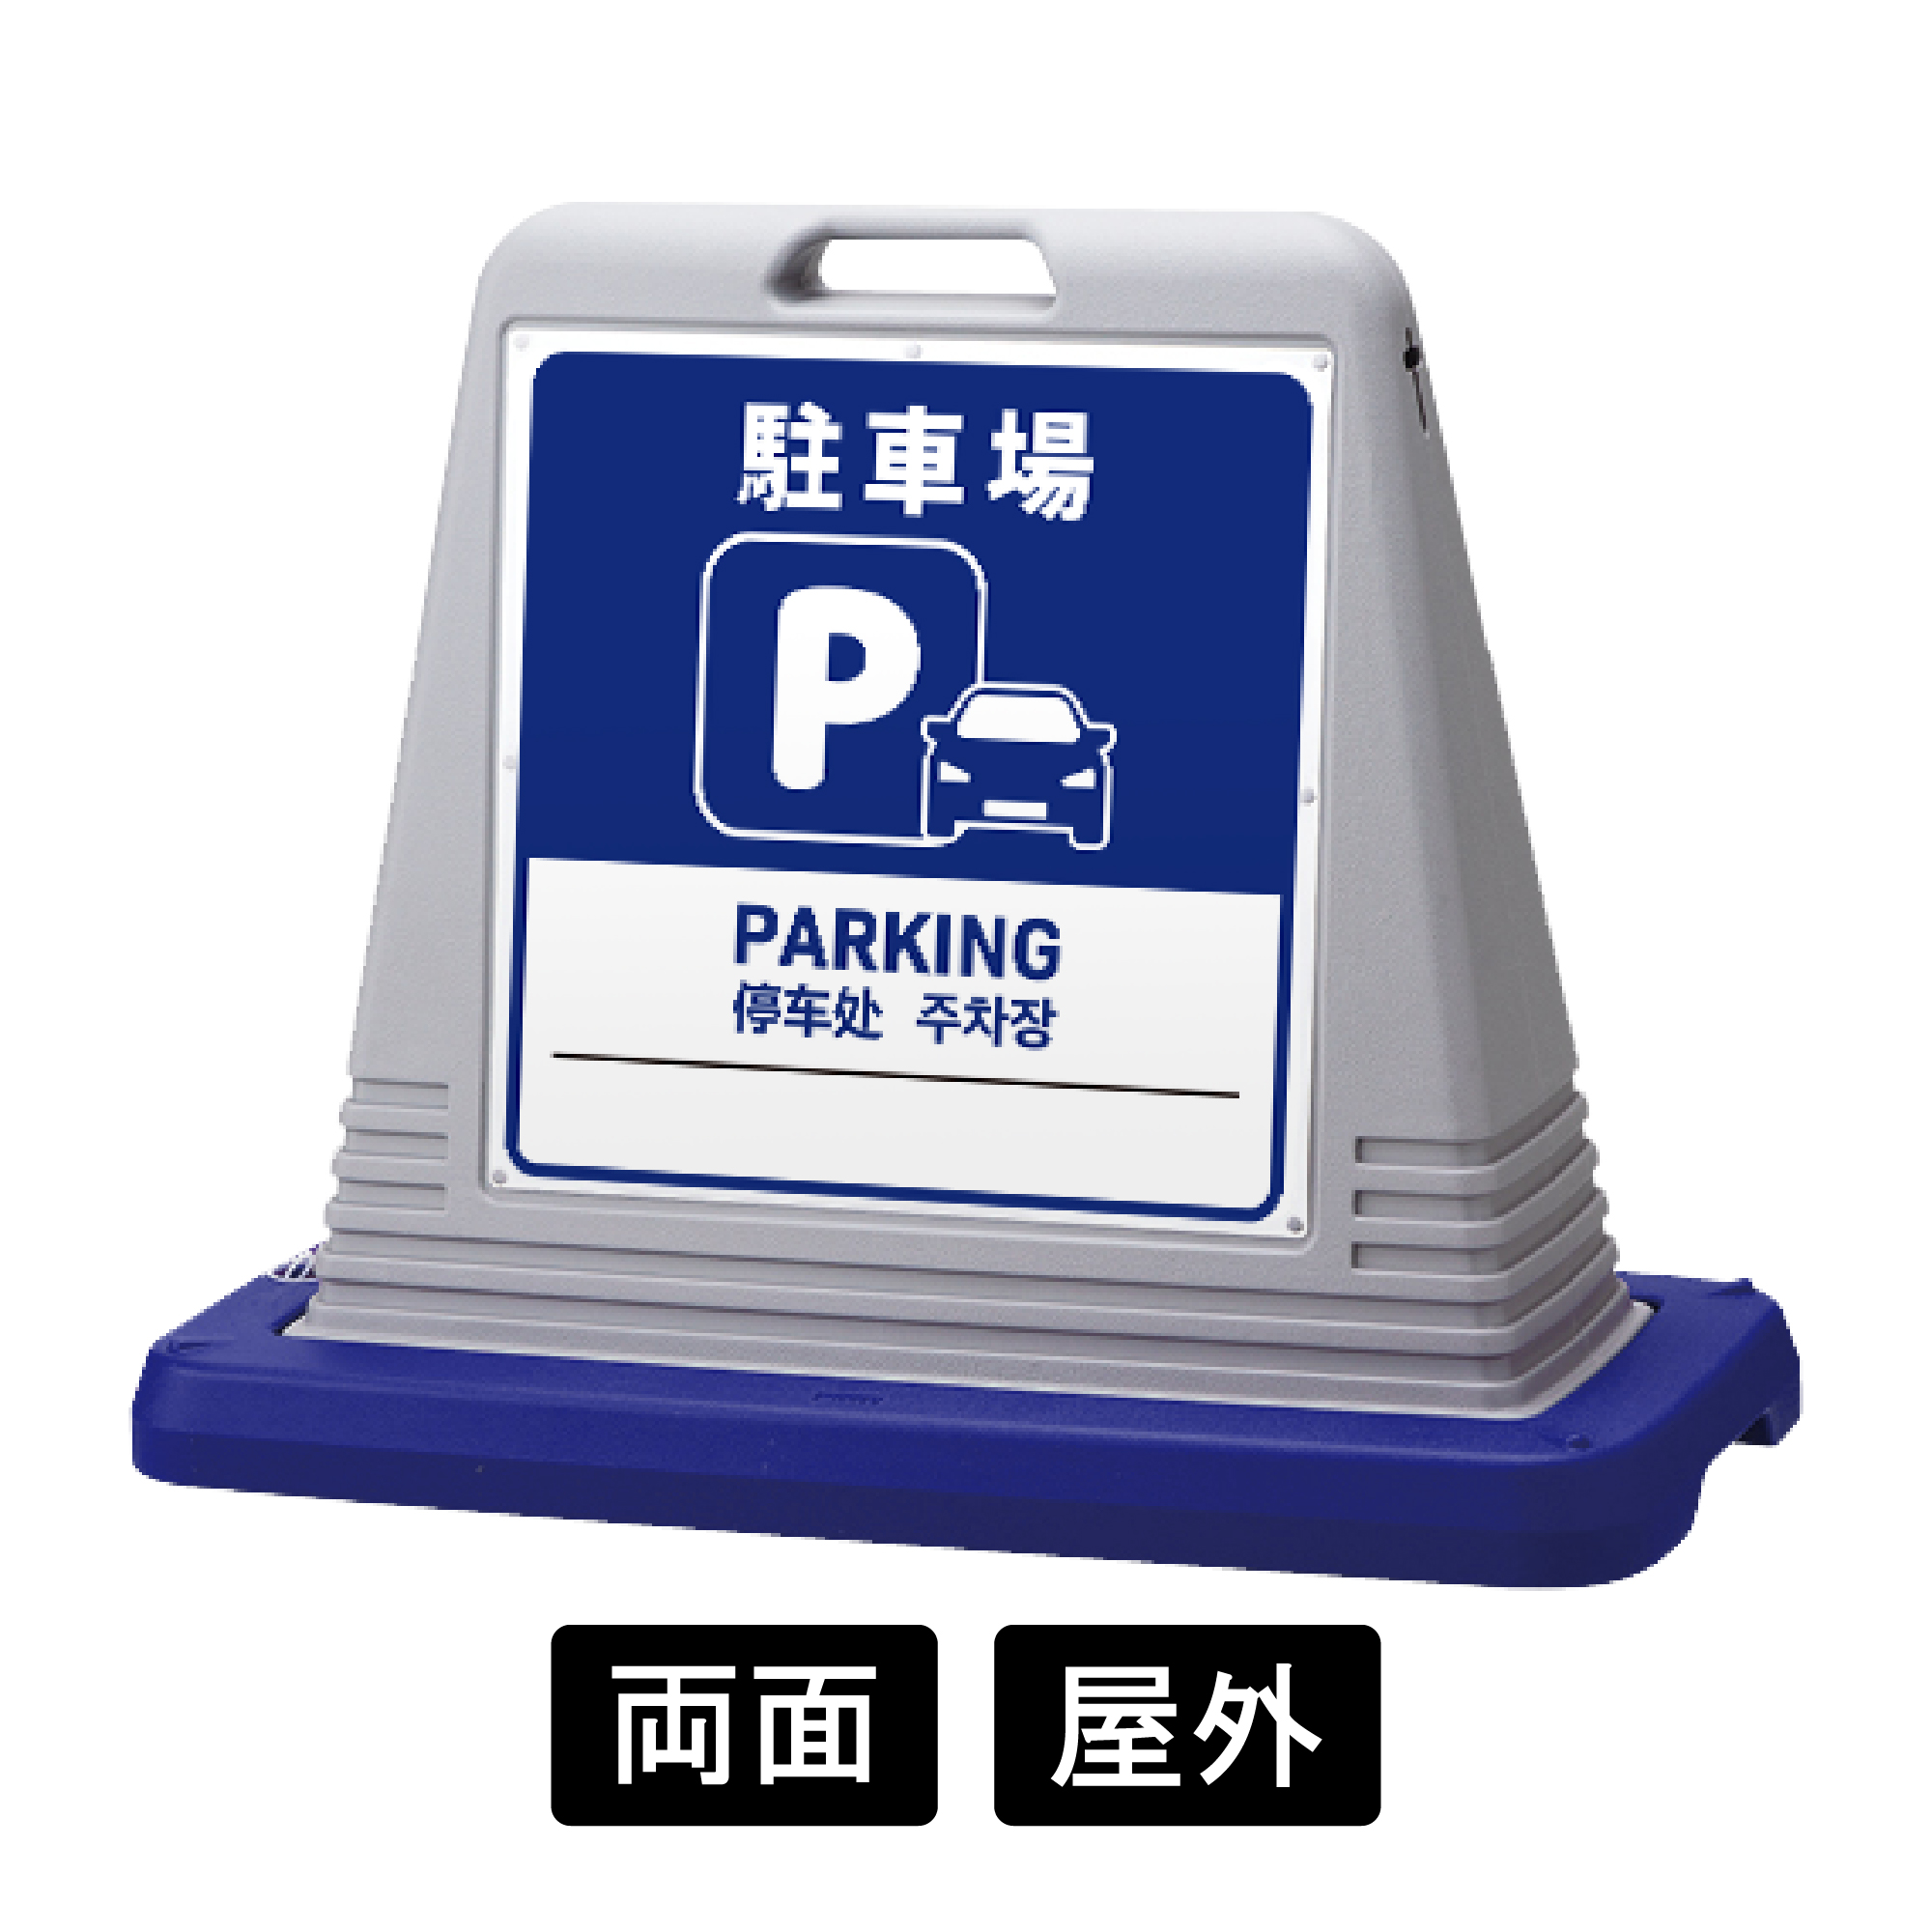 サインキューブ 「駐車場」 両面表示 グレー SignWebオリジナル 多言語 ユニバーサルデザイン